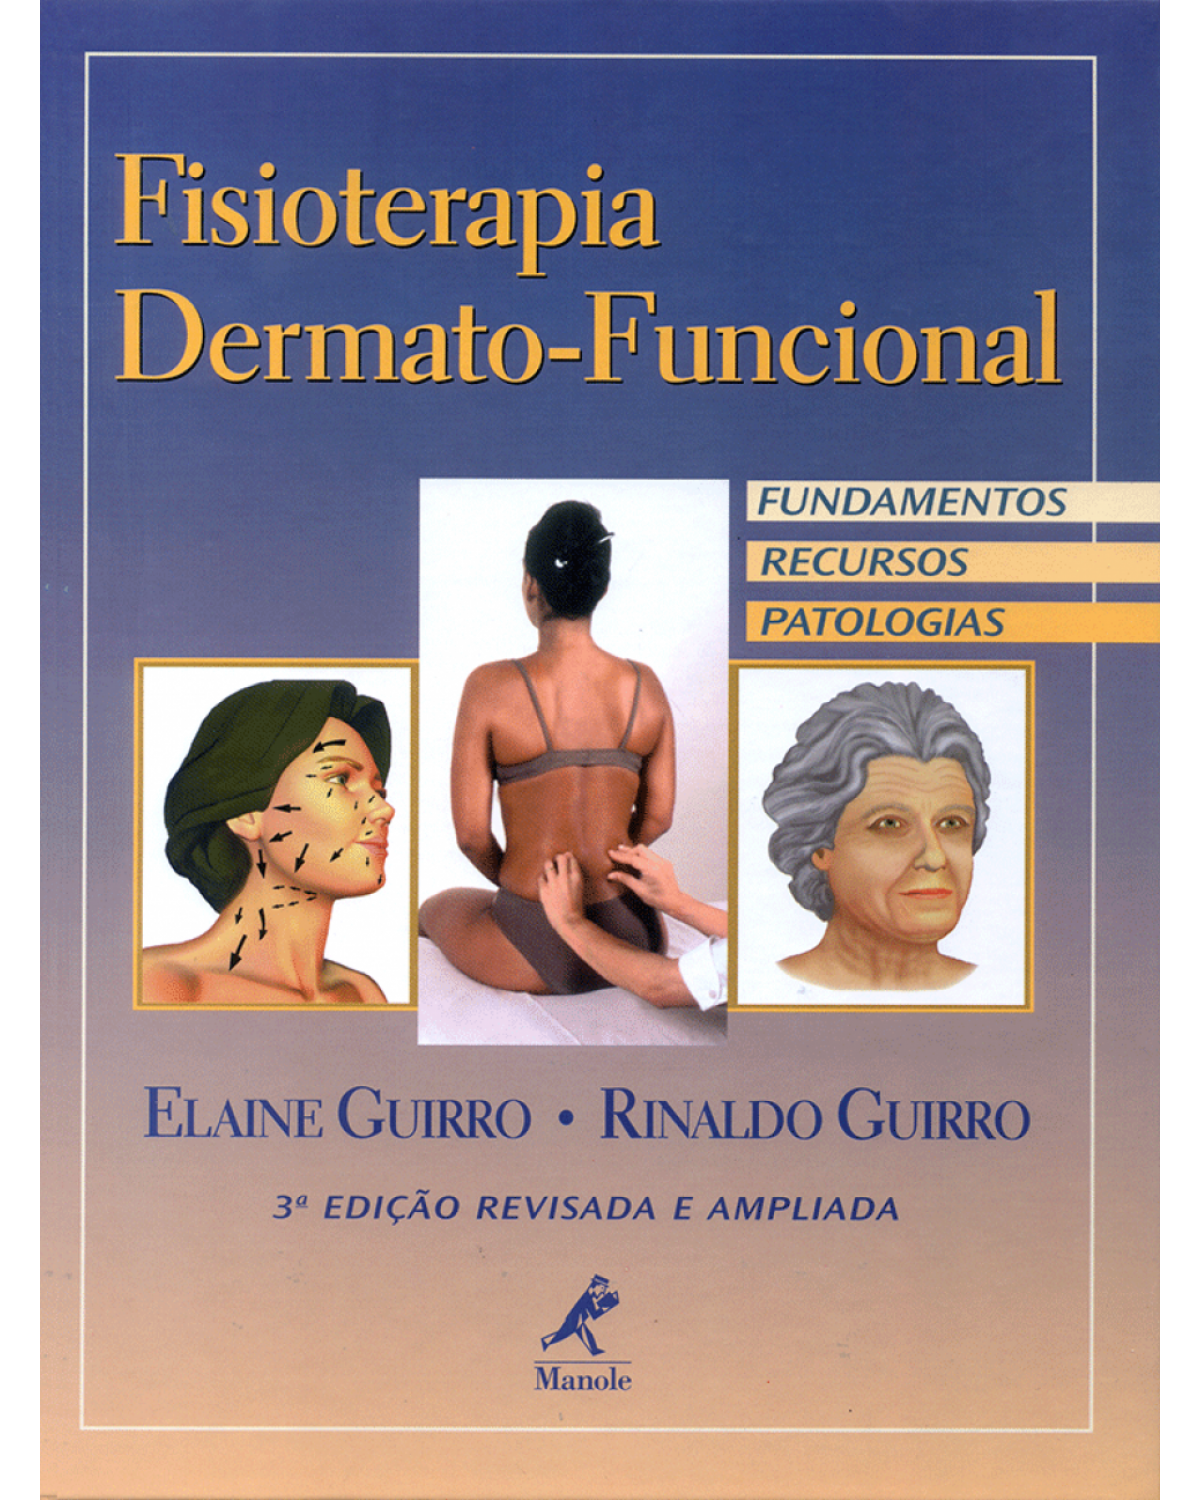 Fisioterapia dermato-funcional - Fundamentos, recursos, patologias - 3ª Edição | 2003